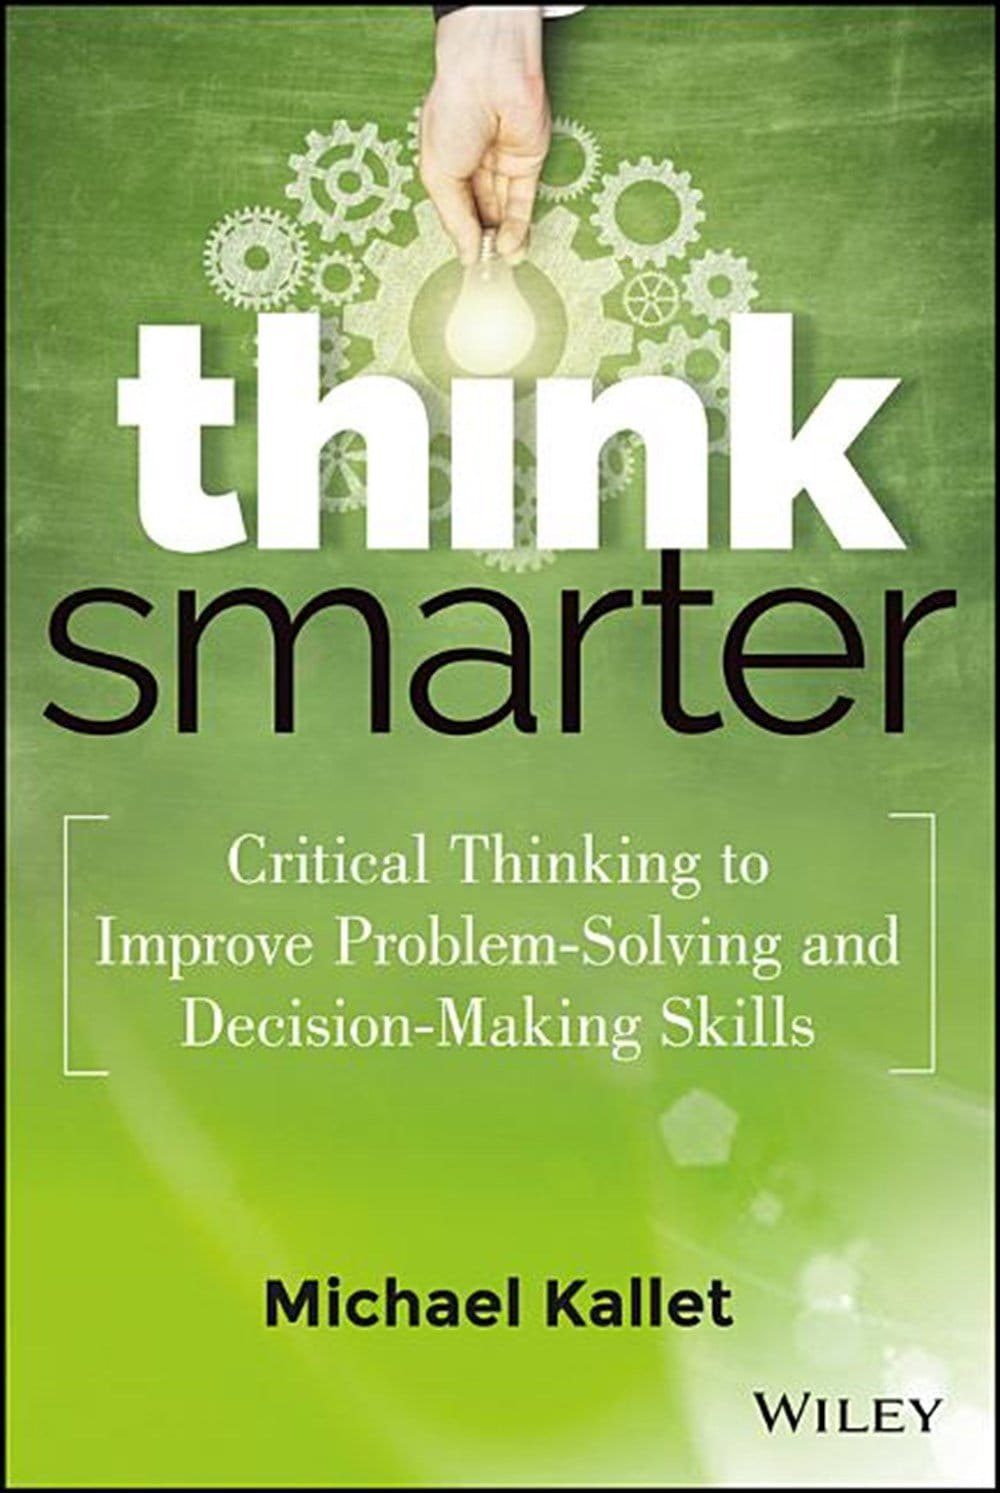 4- فكر بذكاء: التفكير النقدي لتحسين مهارات حل المشكلات واتخاذ القرار (Think Smarter: Critical Thinking to Improve Problem-Solving and Decision-Making Skills)